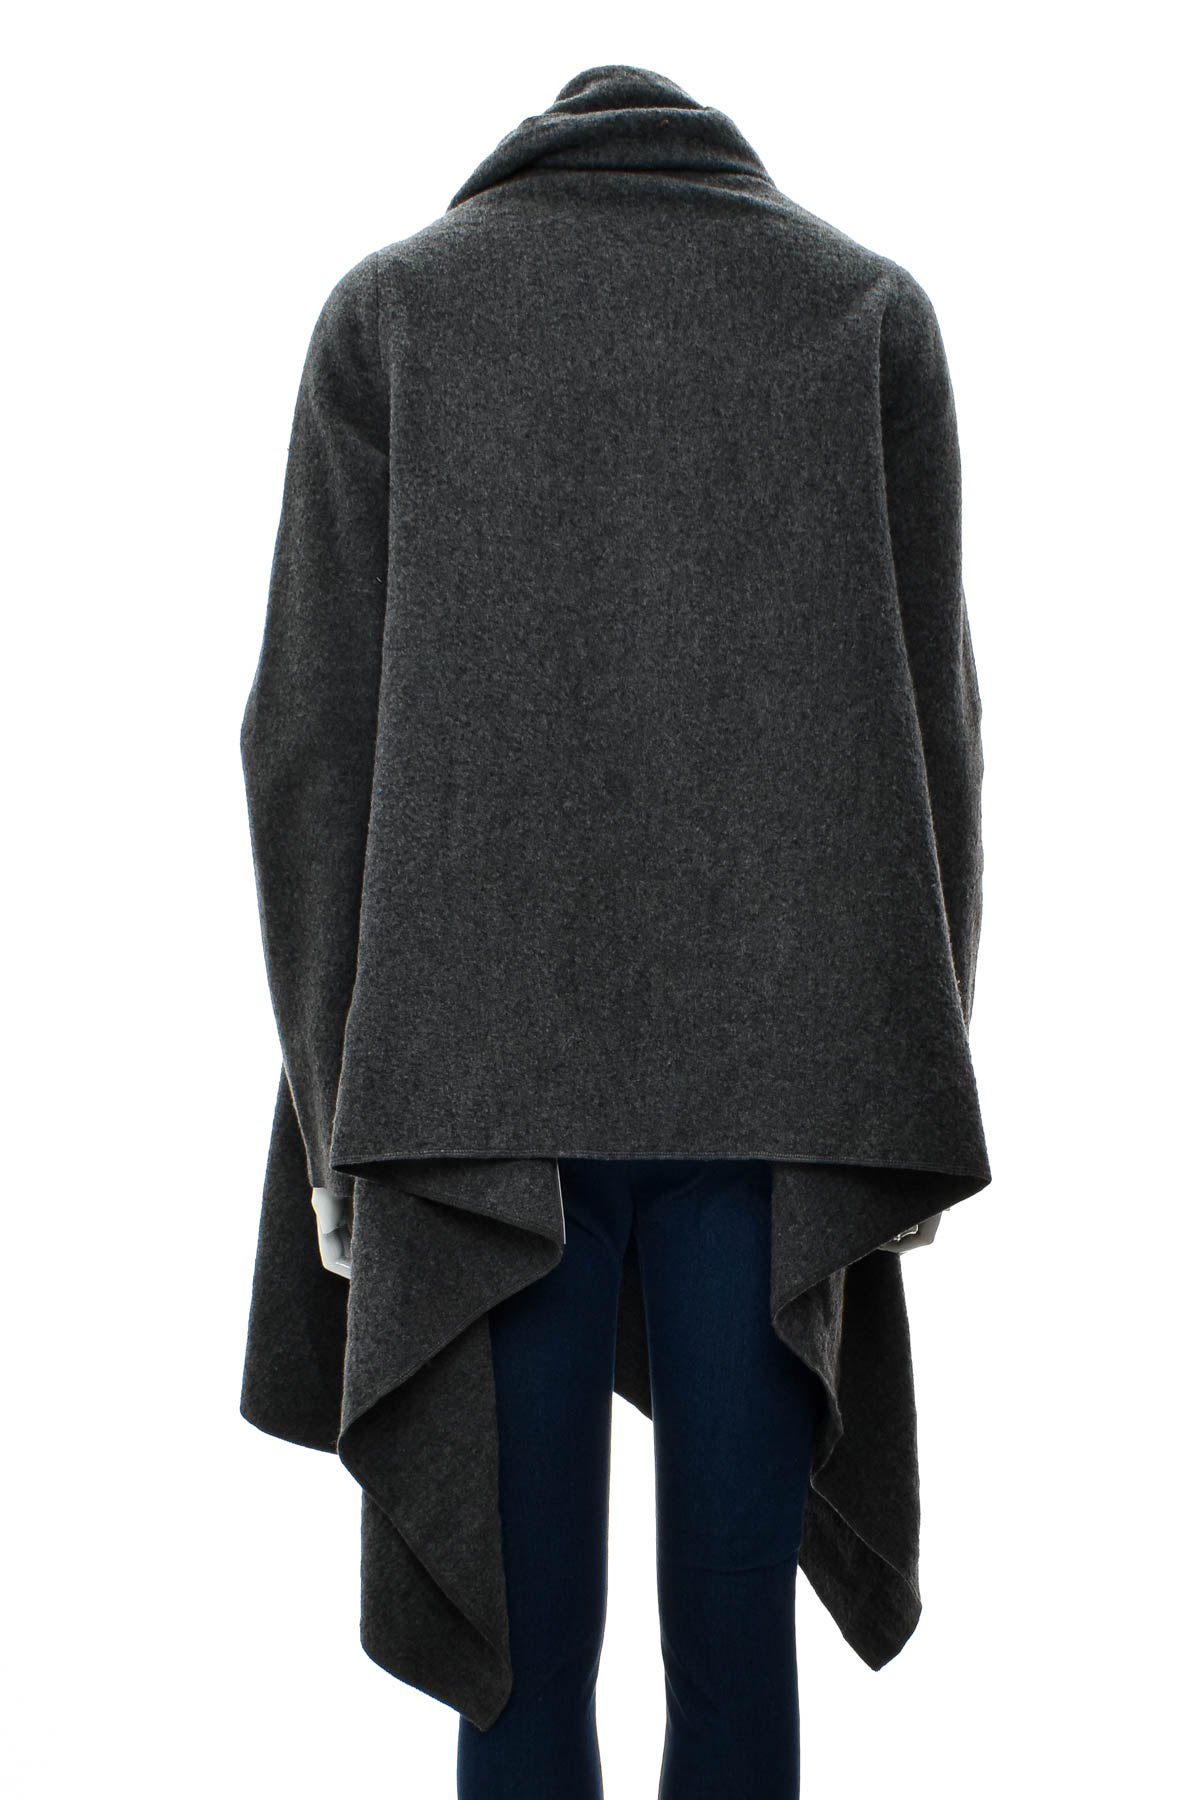 Γυναικείο παλτό - DKNY - 1